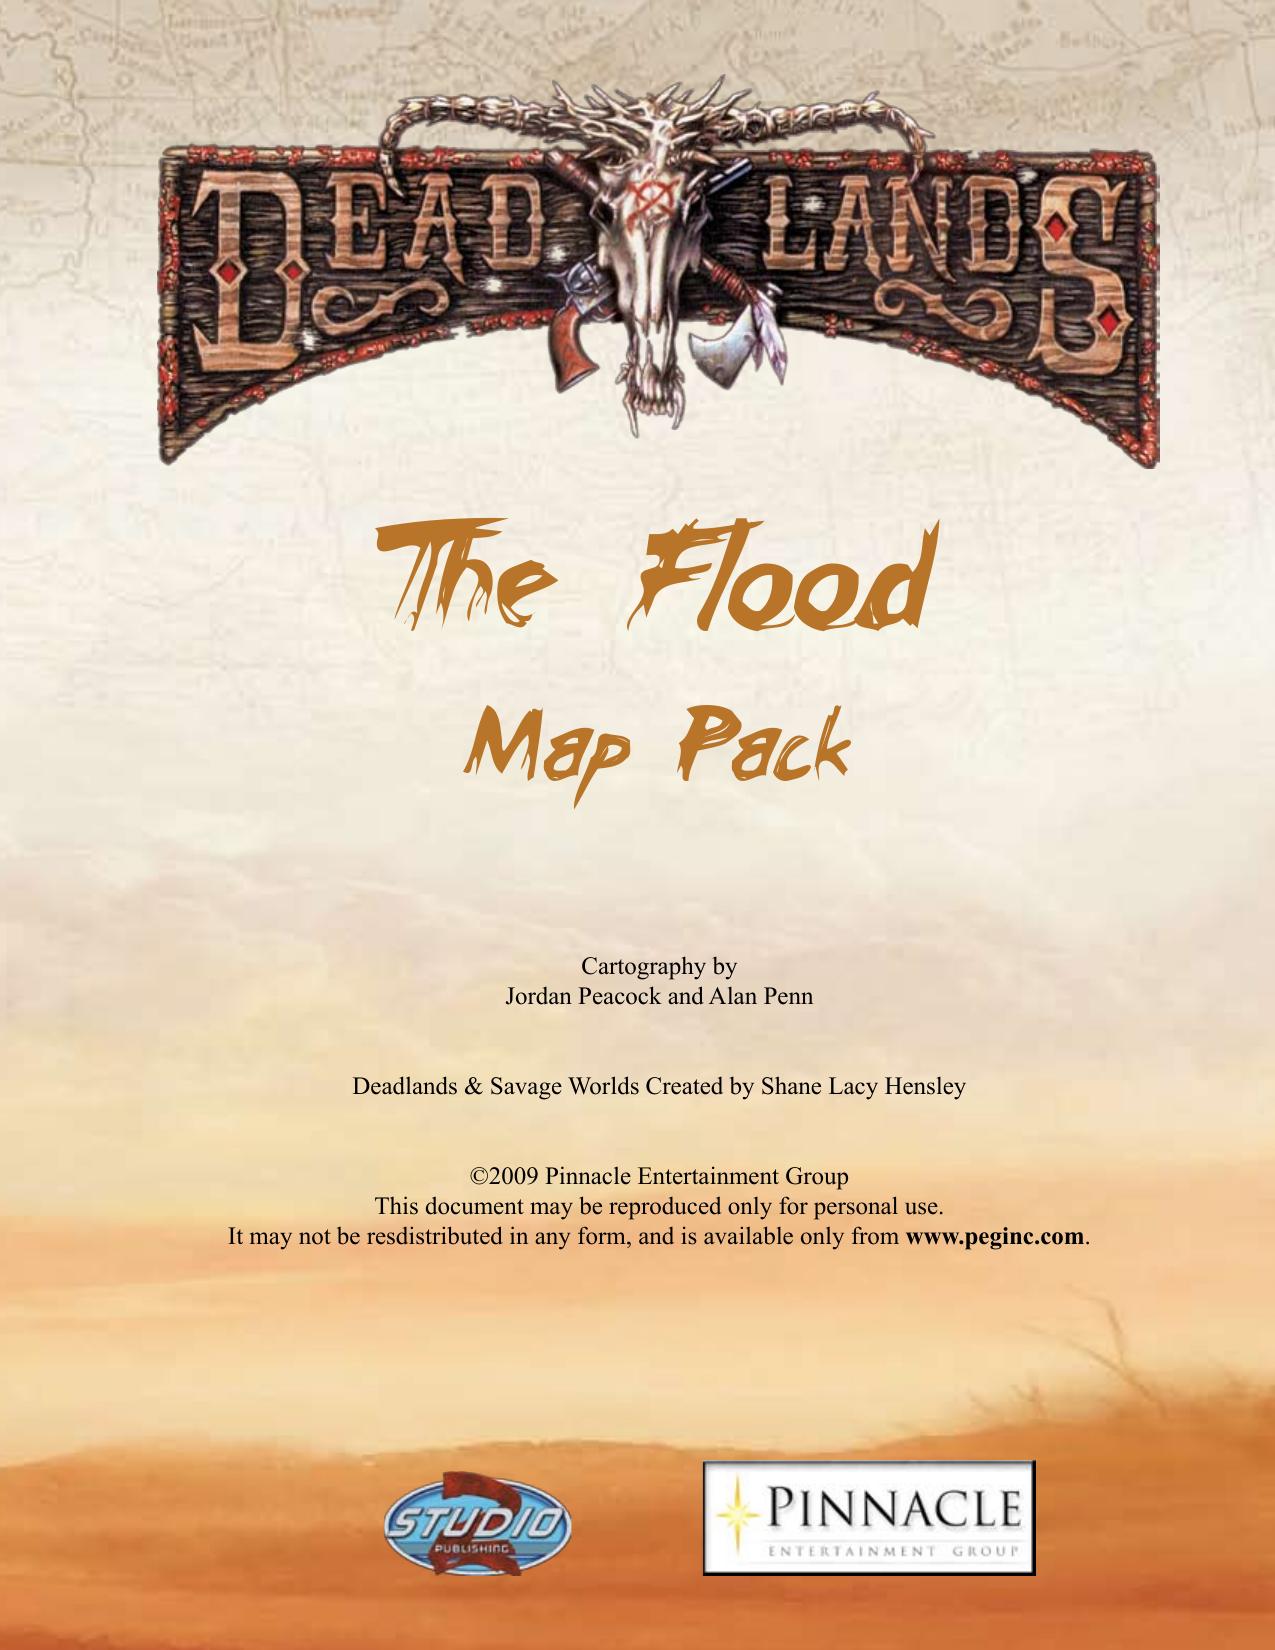 Deadlands Reloaded - 1879 - The Flood